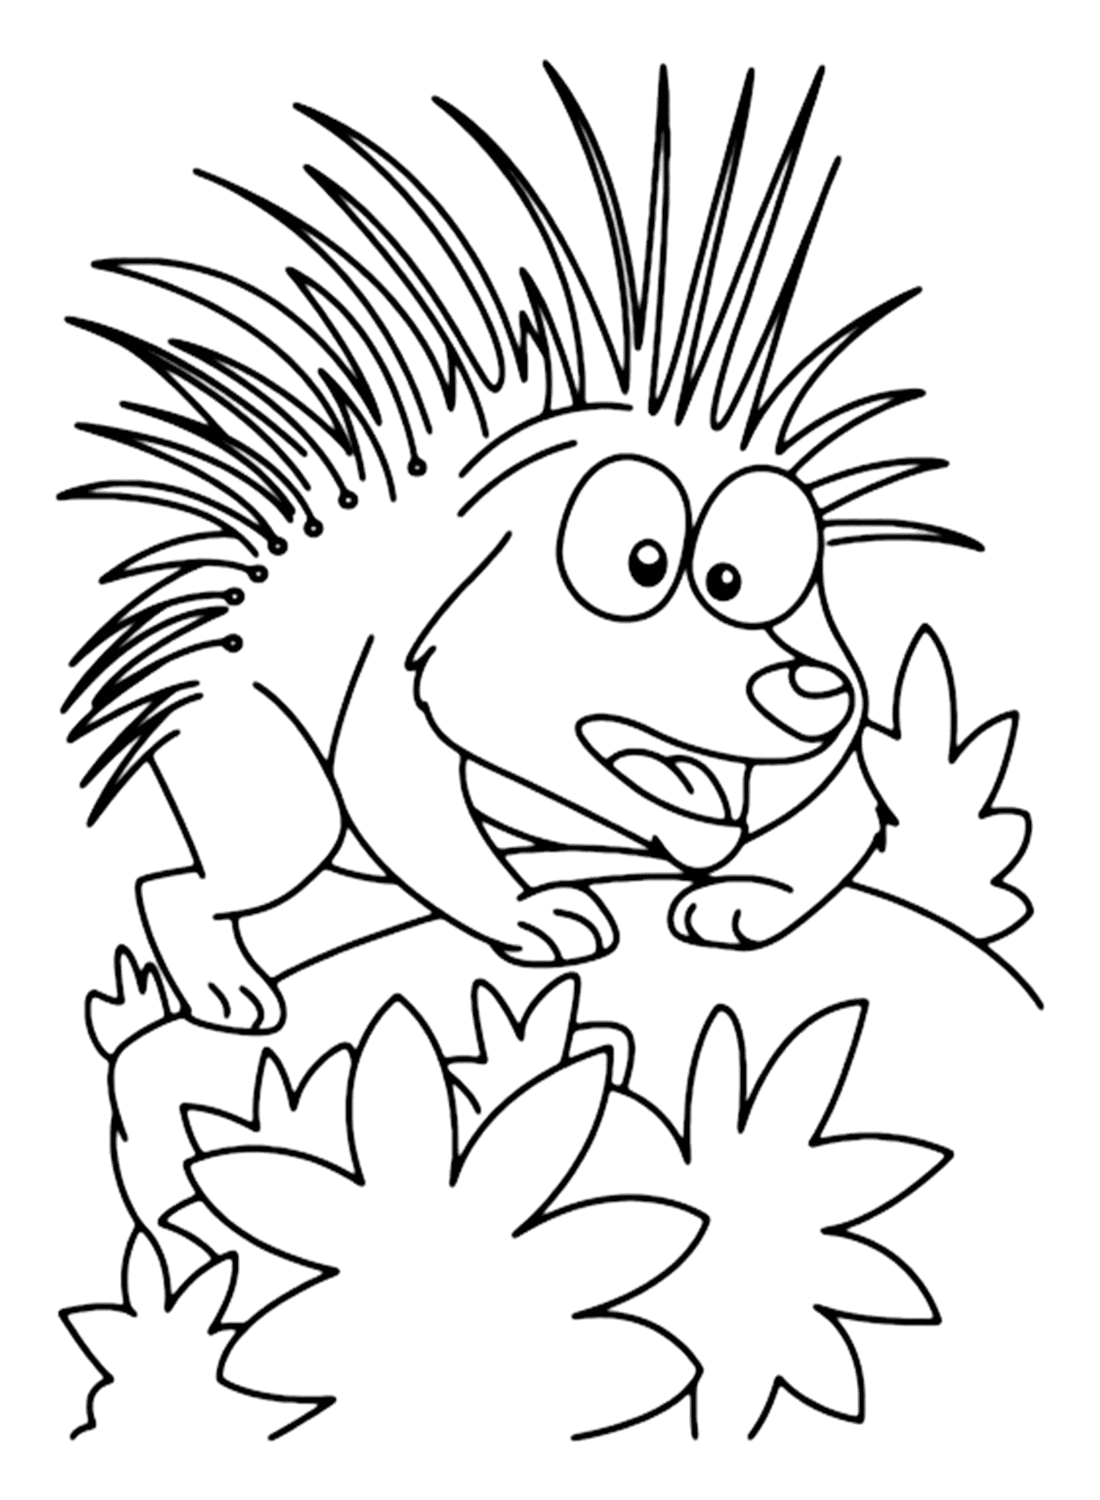 Adorável página para colorir de porco-espinho para crianças from Porcupine